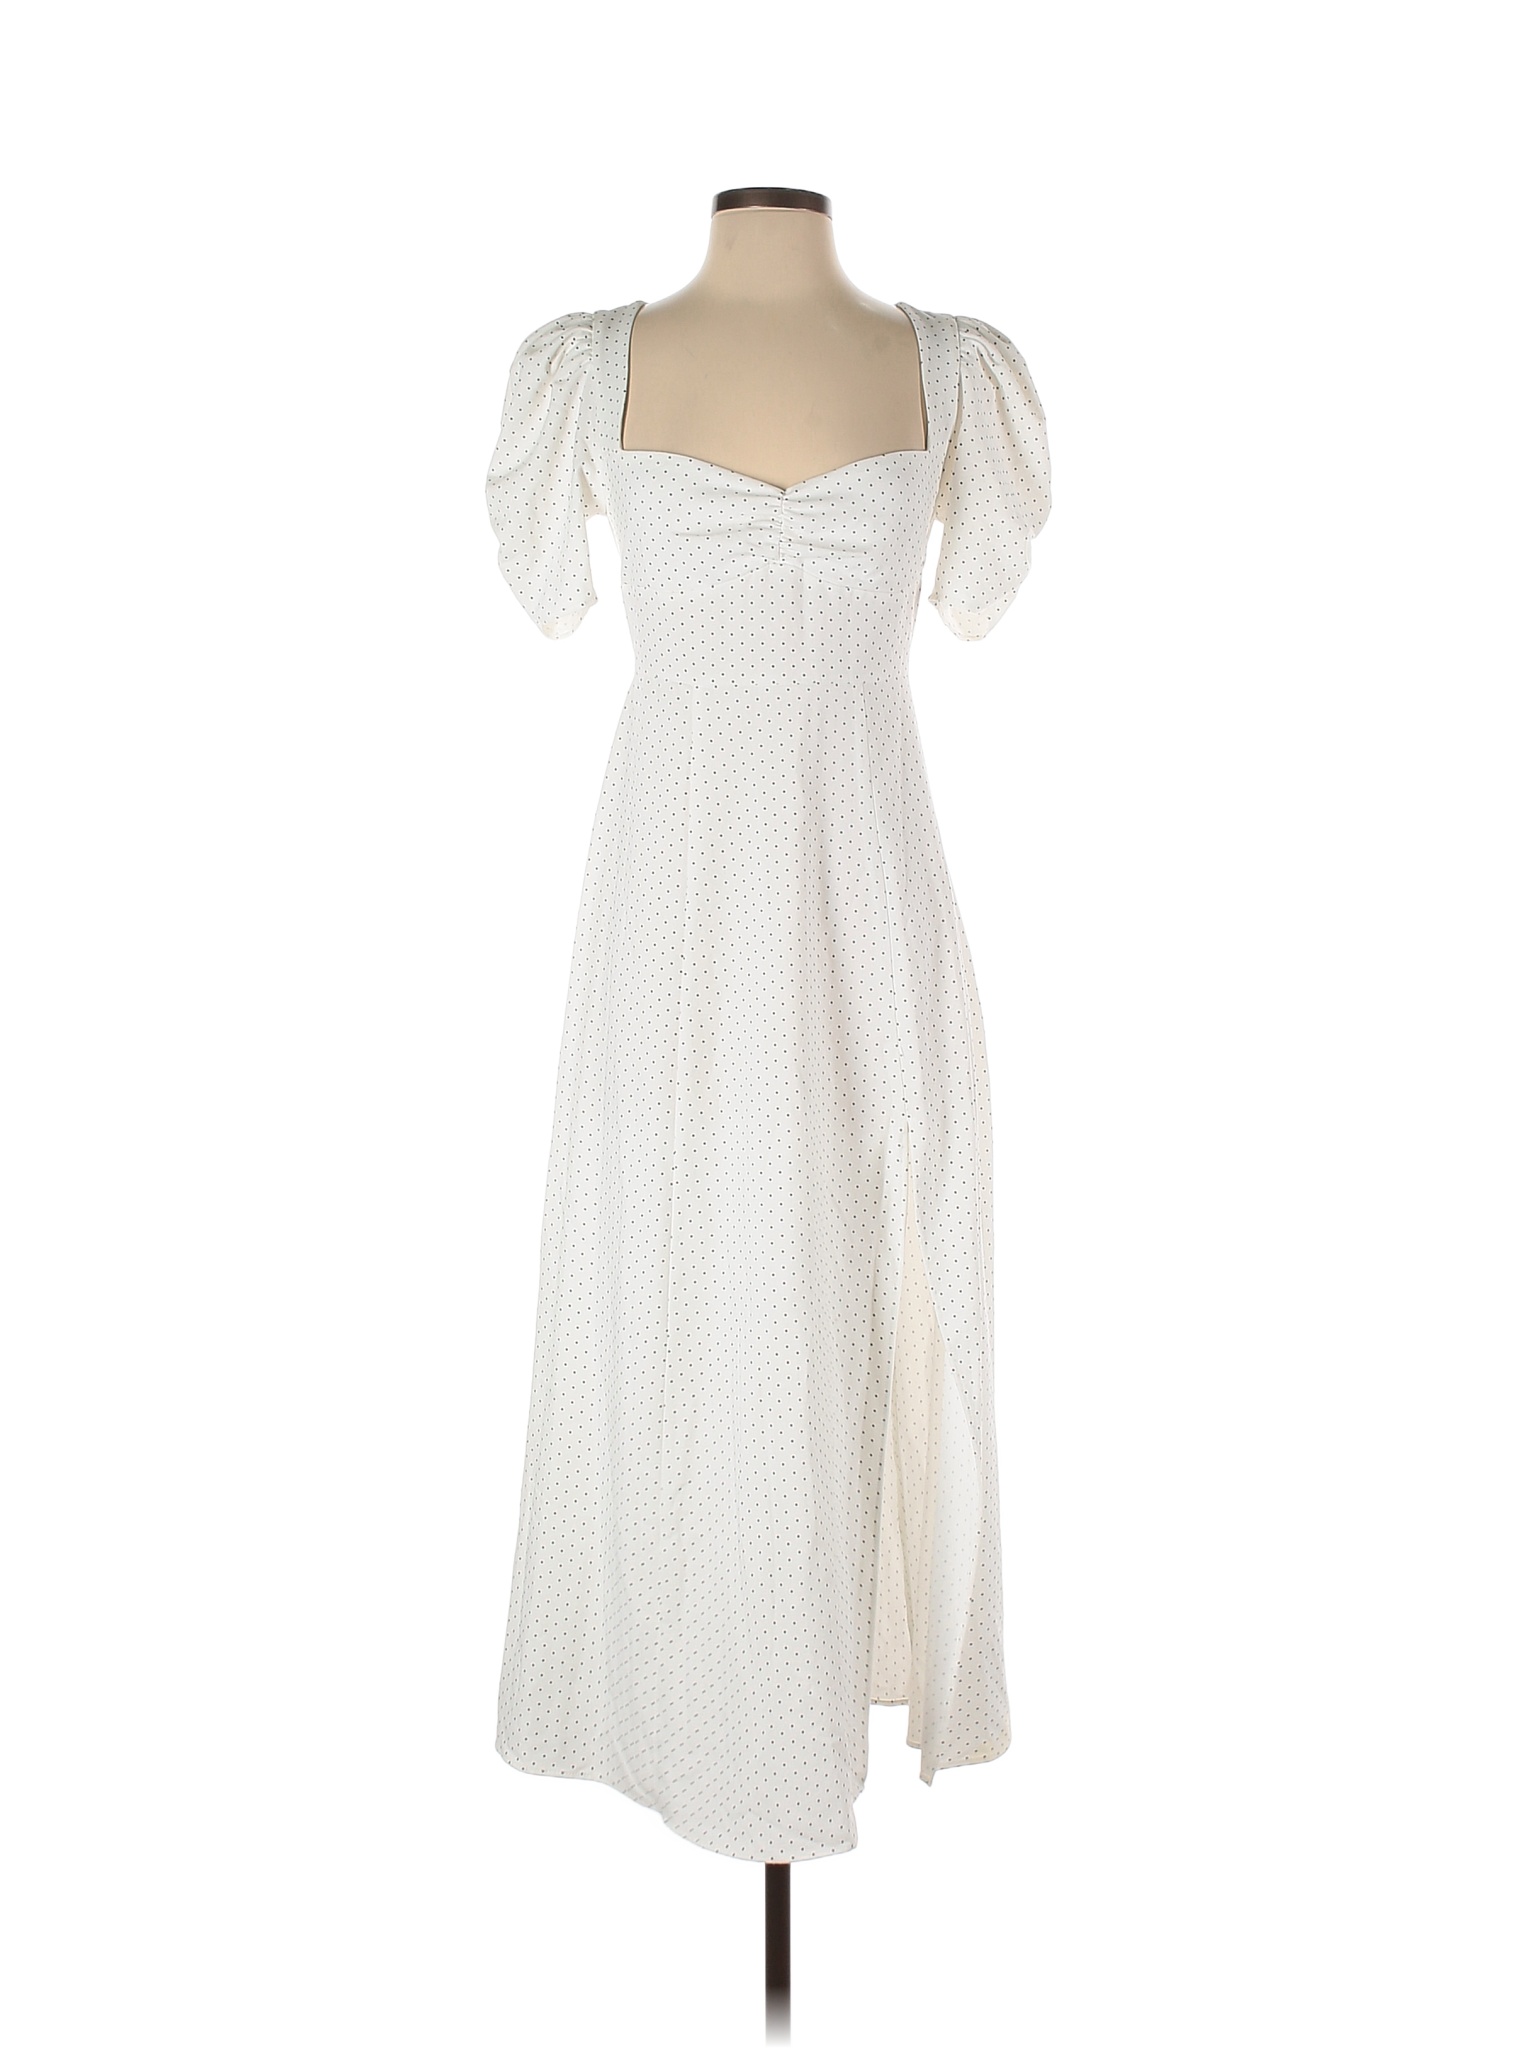 Danielle Bernstein White Casual Dress Size 2 - 34% off | thredUP